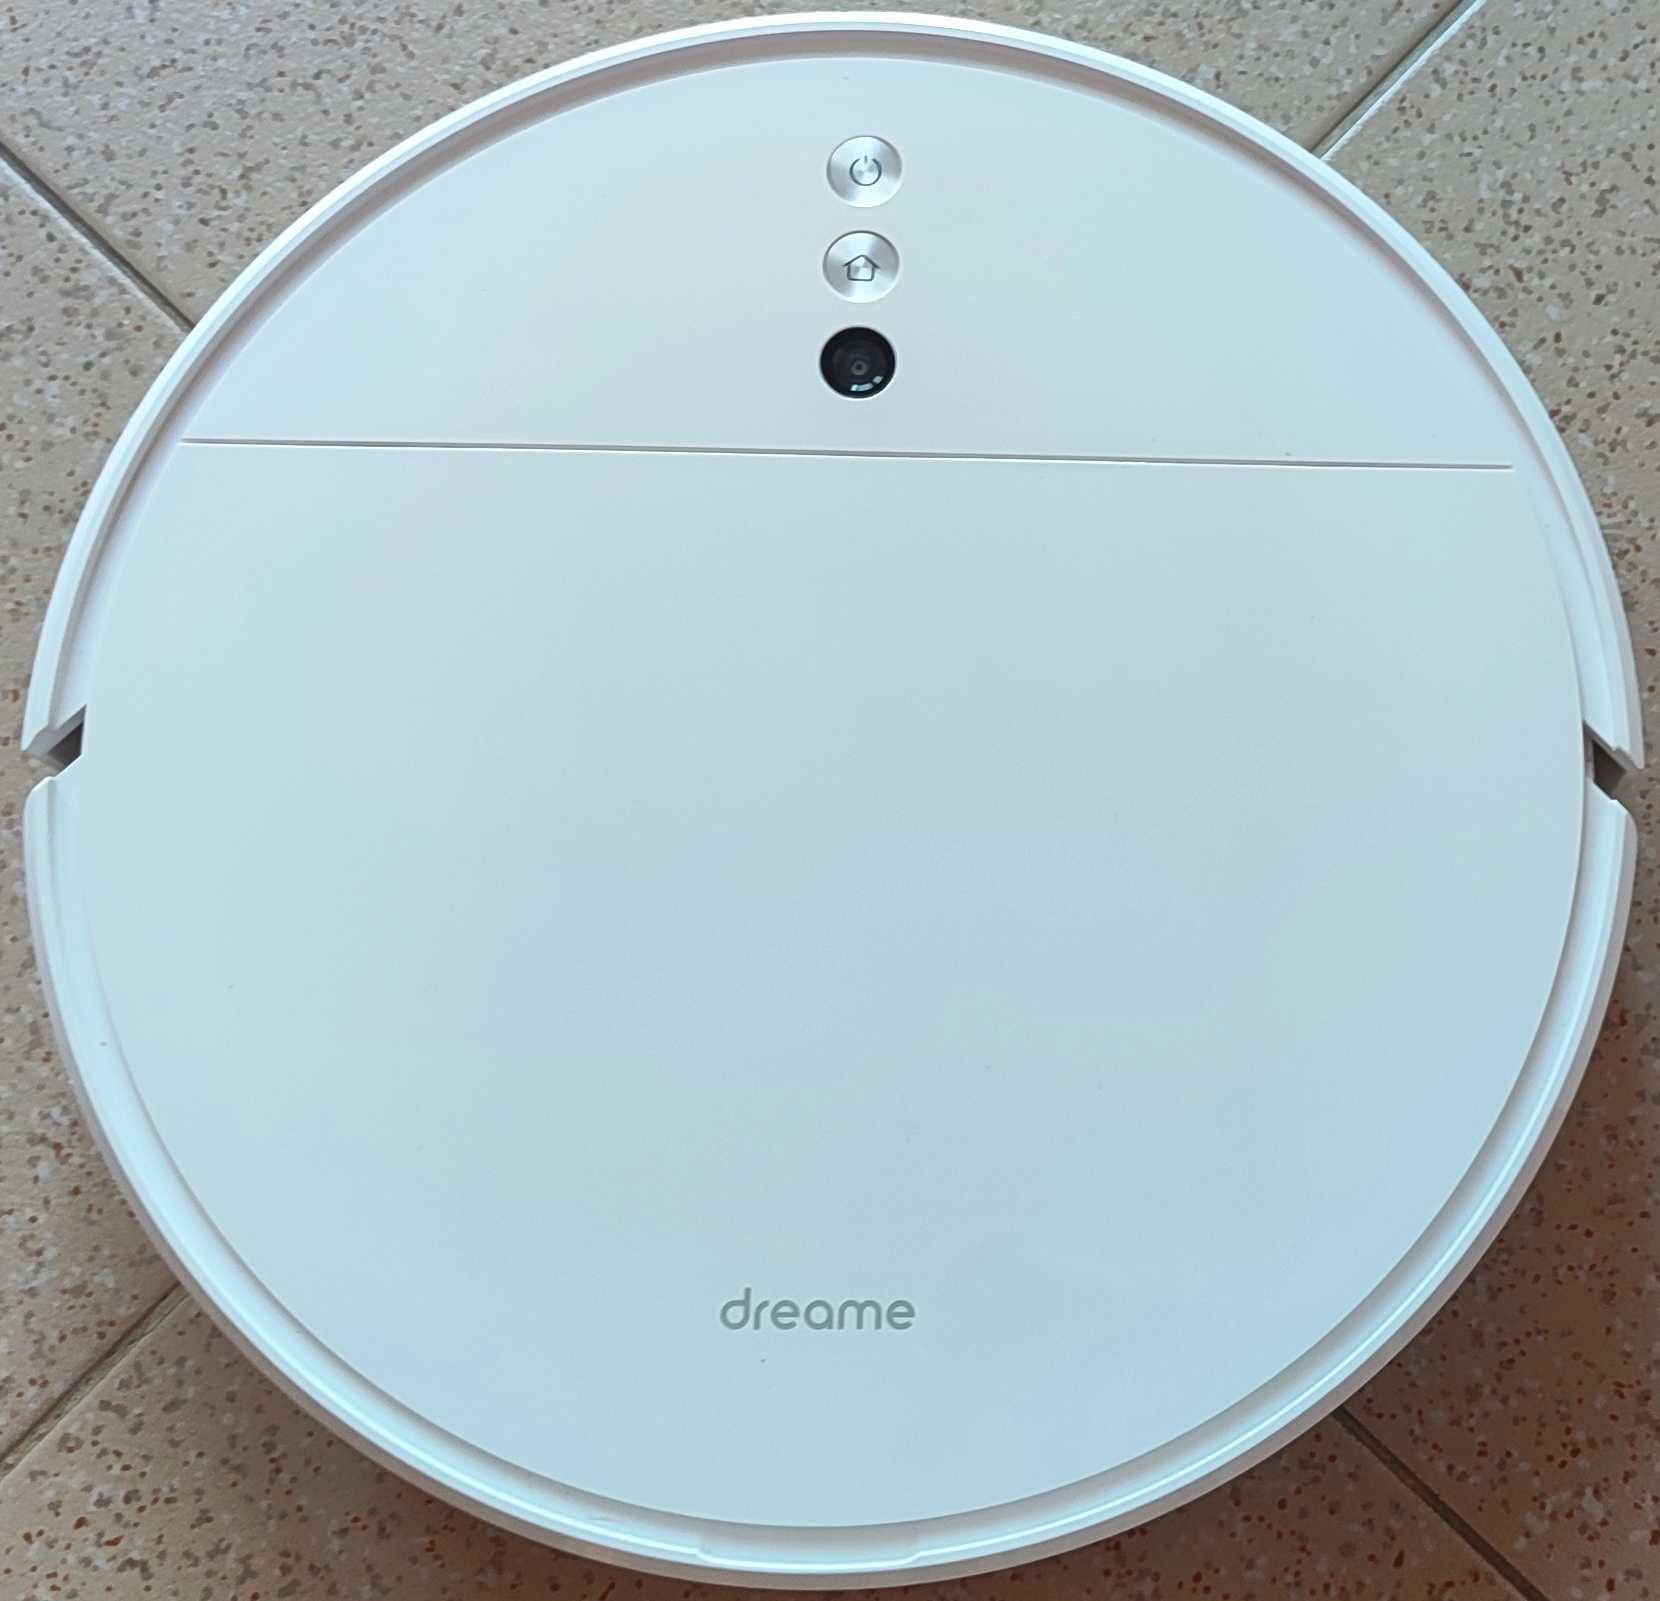 Aspirador Robot com Mopa - Dreame F9 de Xiaomi - Branco - Quase novo